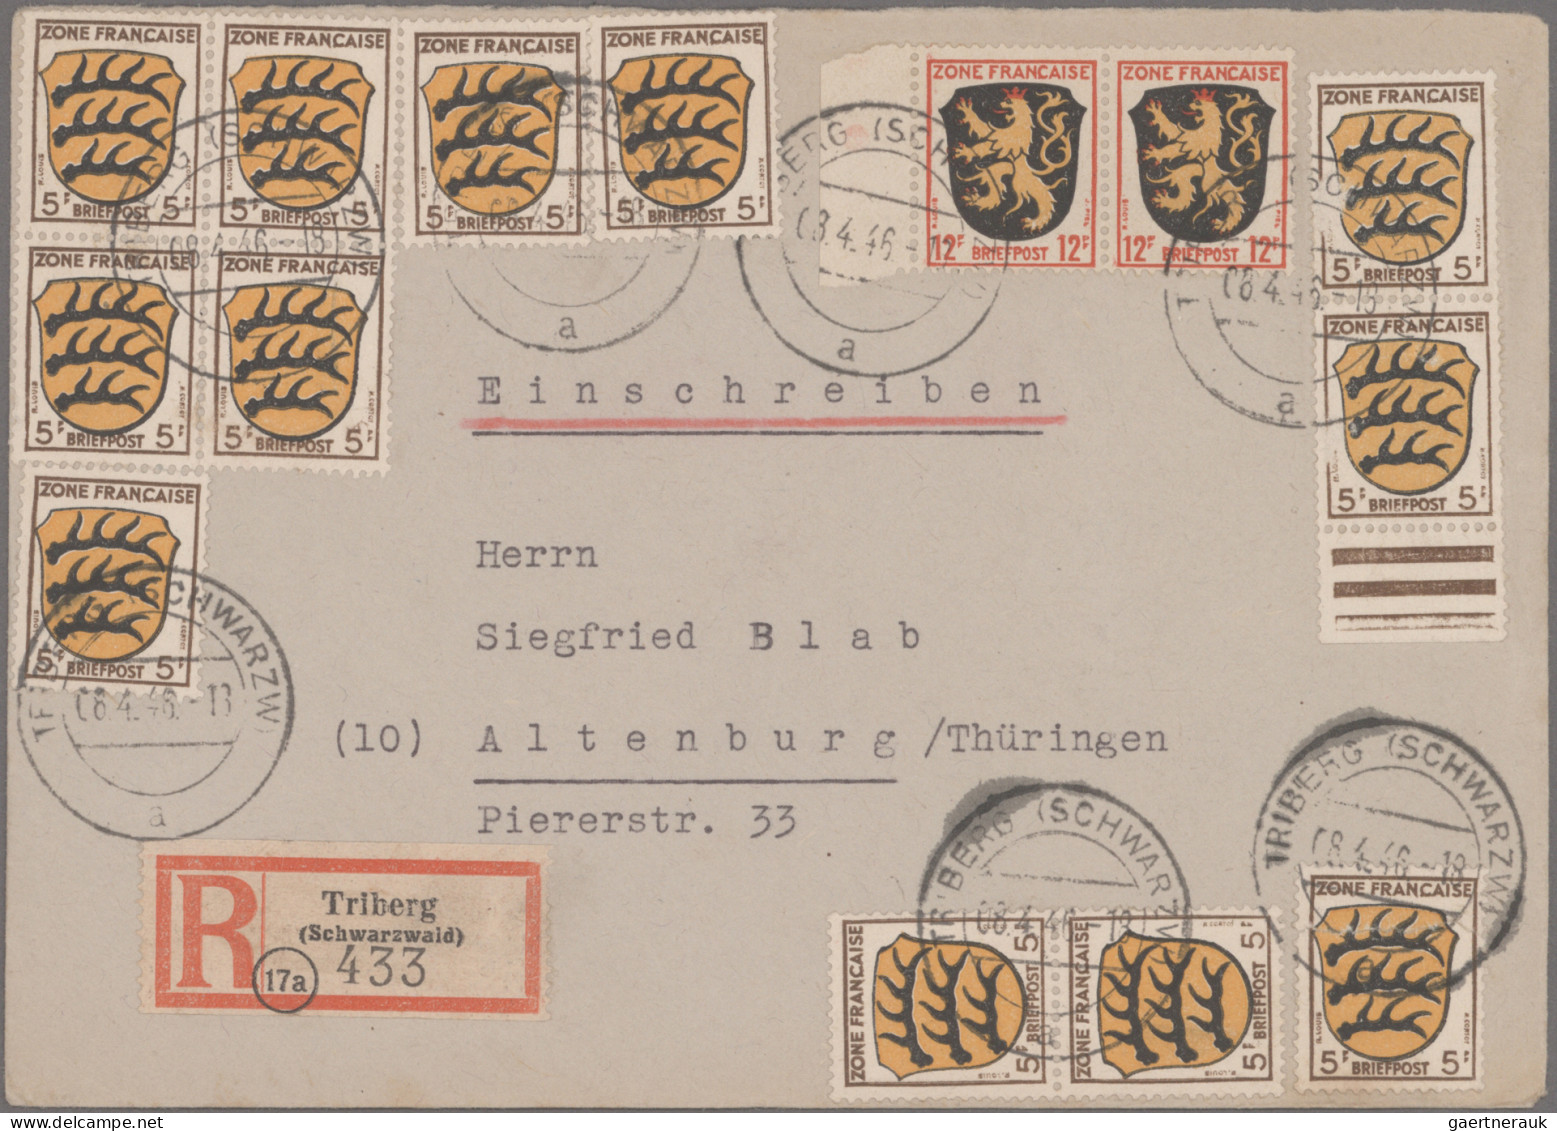 Französische Zone - Baden: 1945/1947, saubere Sammlung von 85 Briefen und Karten